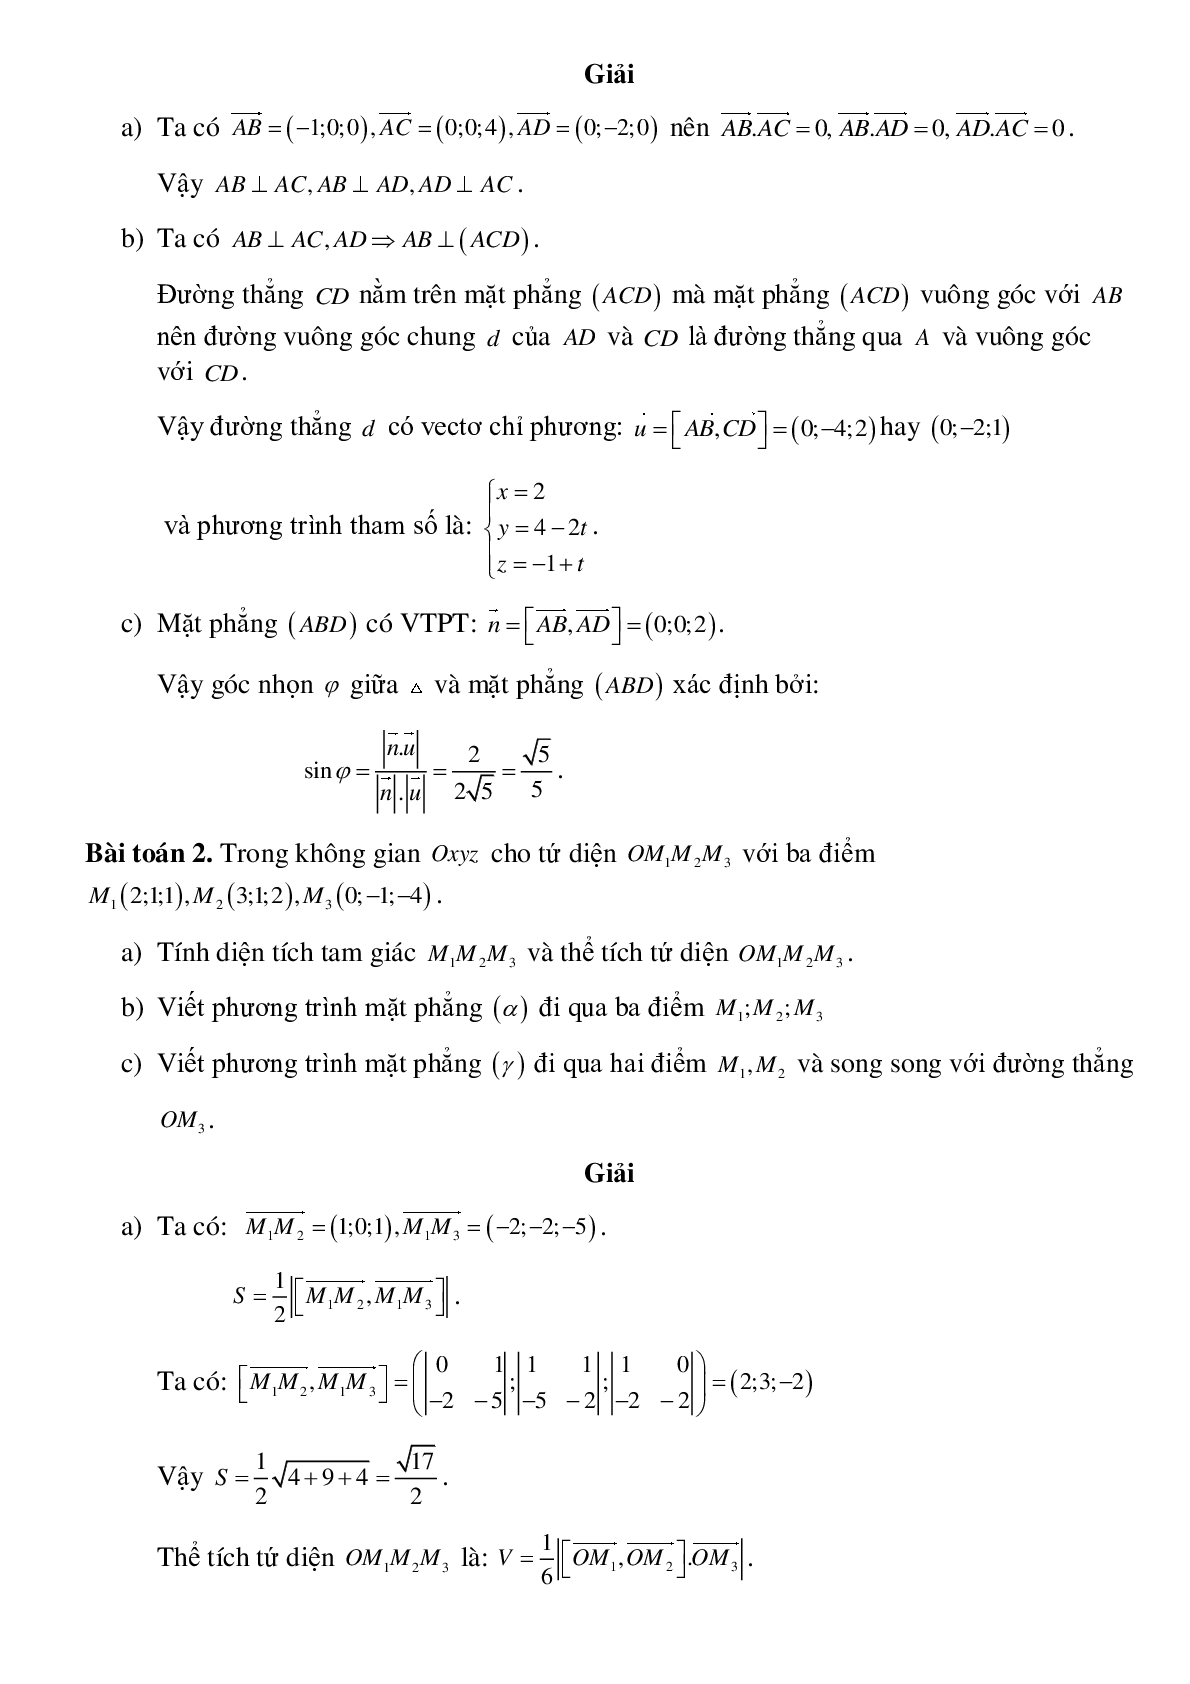 Ứng dụng phương pháp tọa độ trong các hình không gian (trang 2)